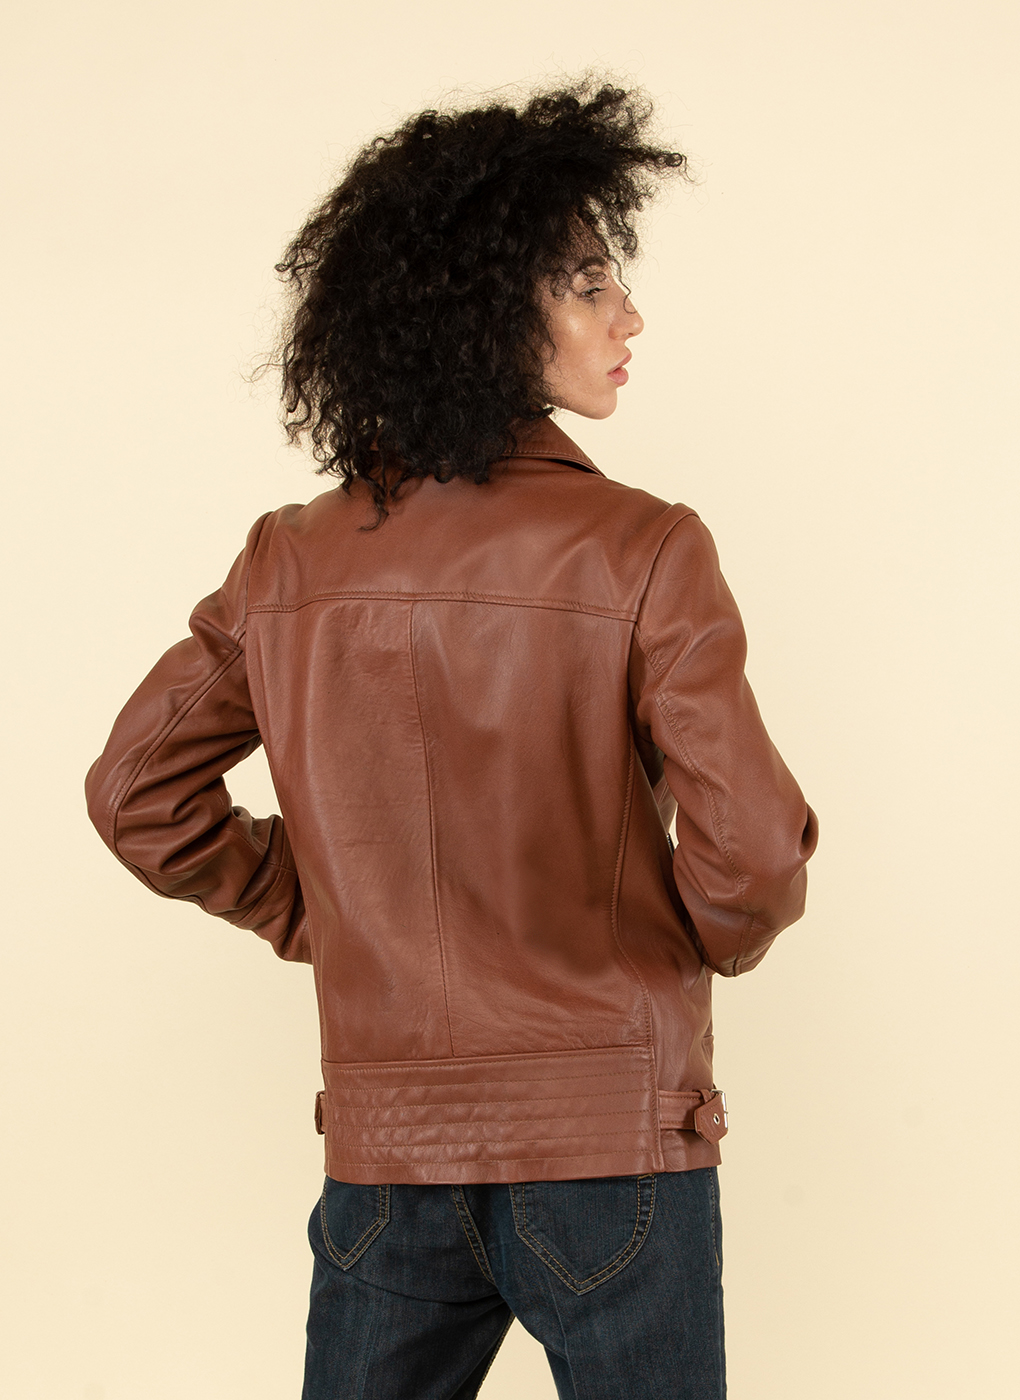 Кожаная куртка женская Каляев 53744 коричневая 52 RU